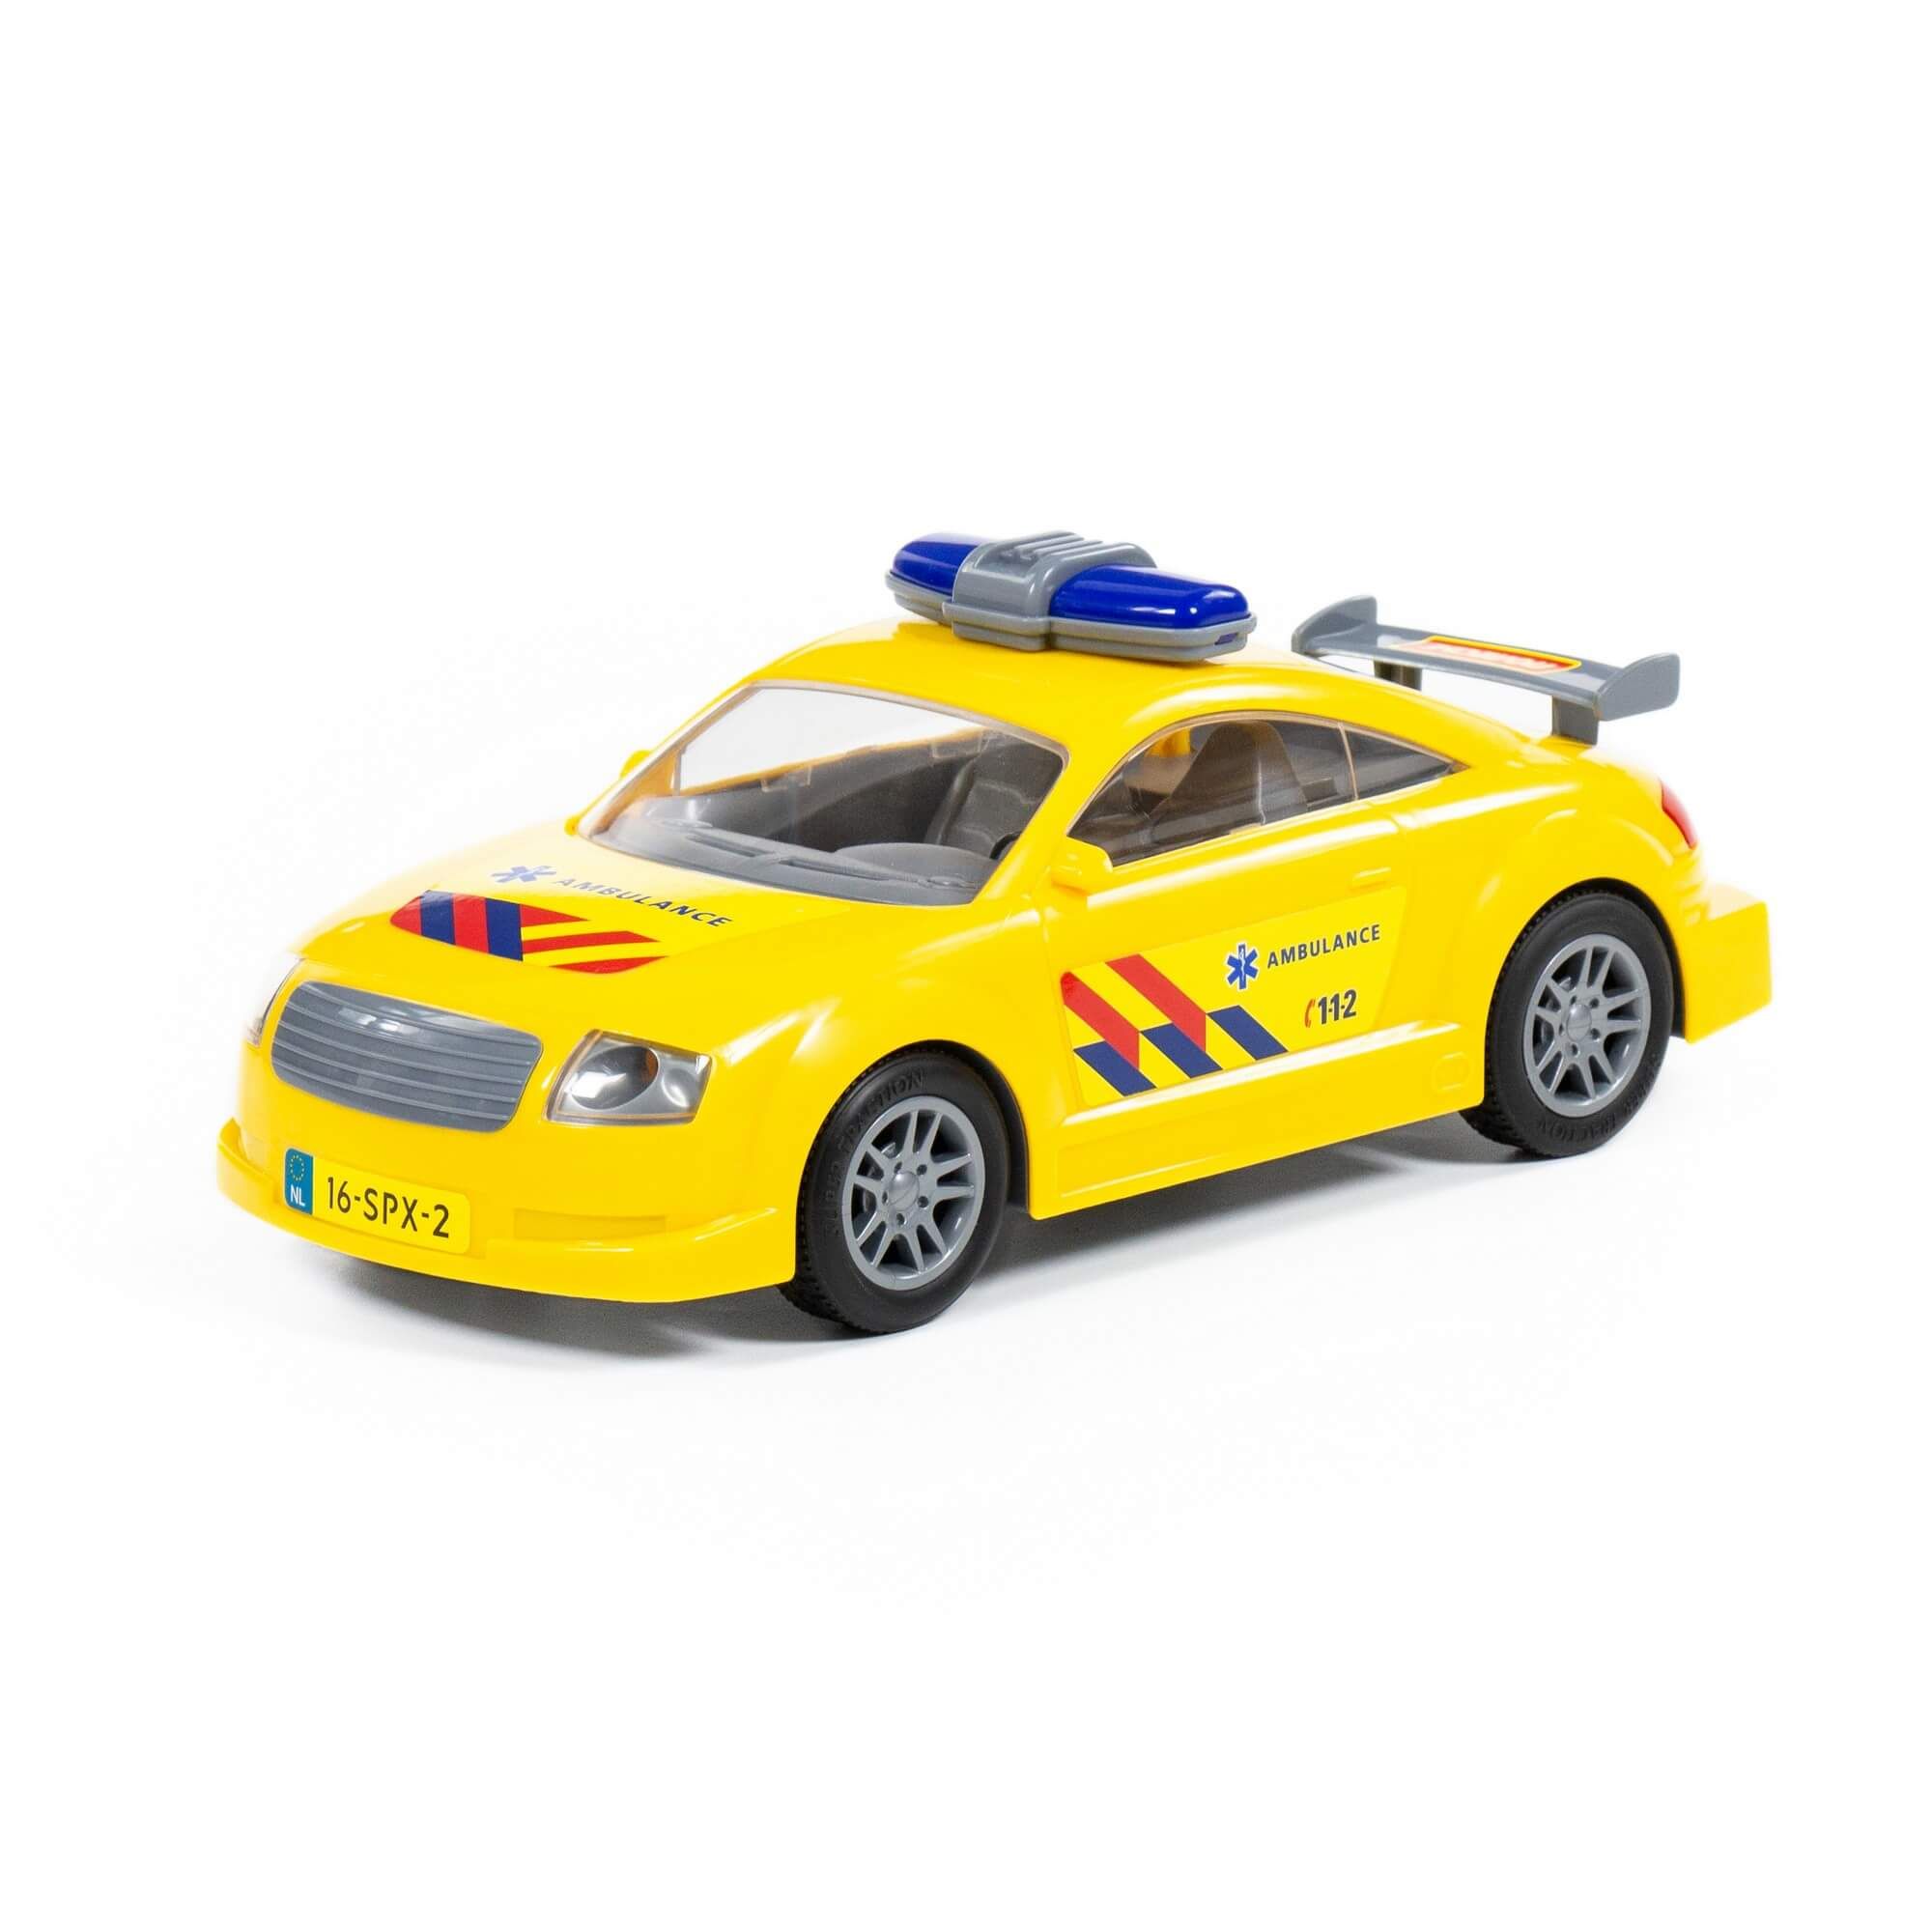 Автомобиль скорая помощь инерционный (NL) (в пакете) 71293 автомобиль джип скорая помощь сафари nl в сеточке полесье